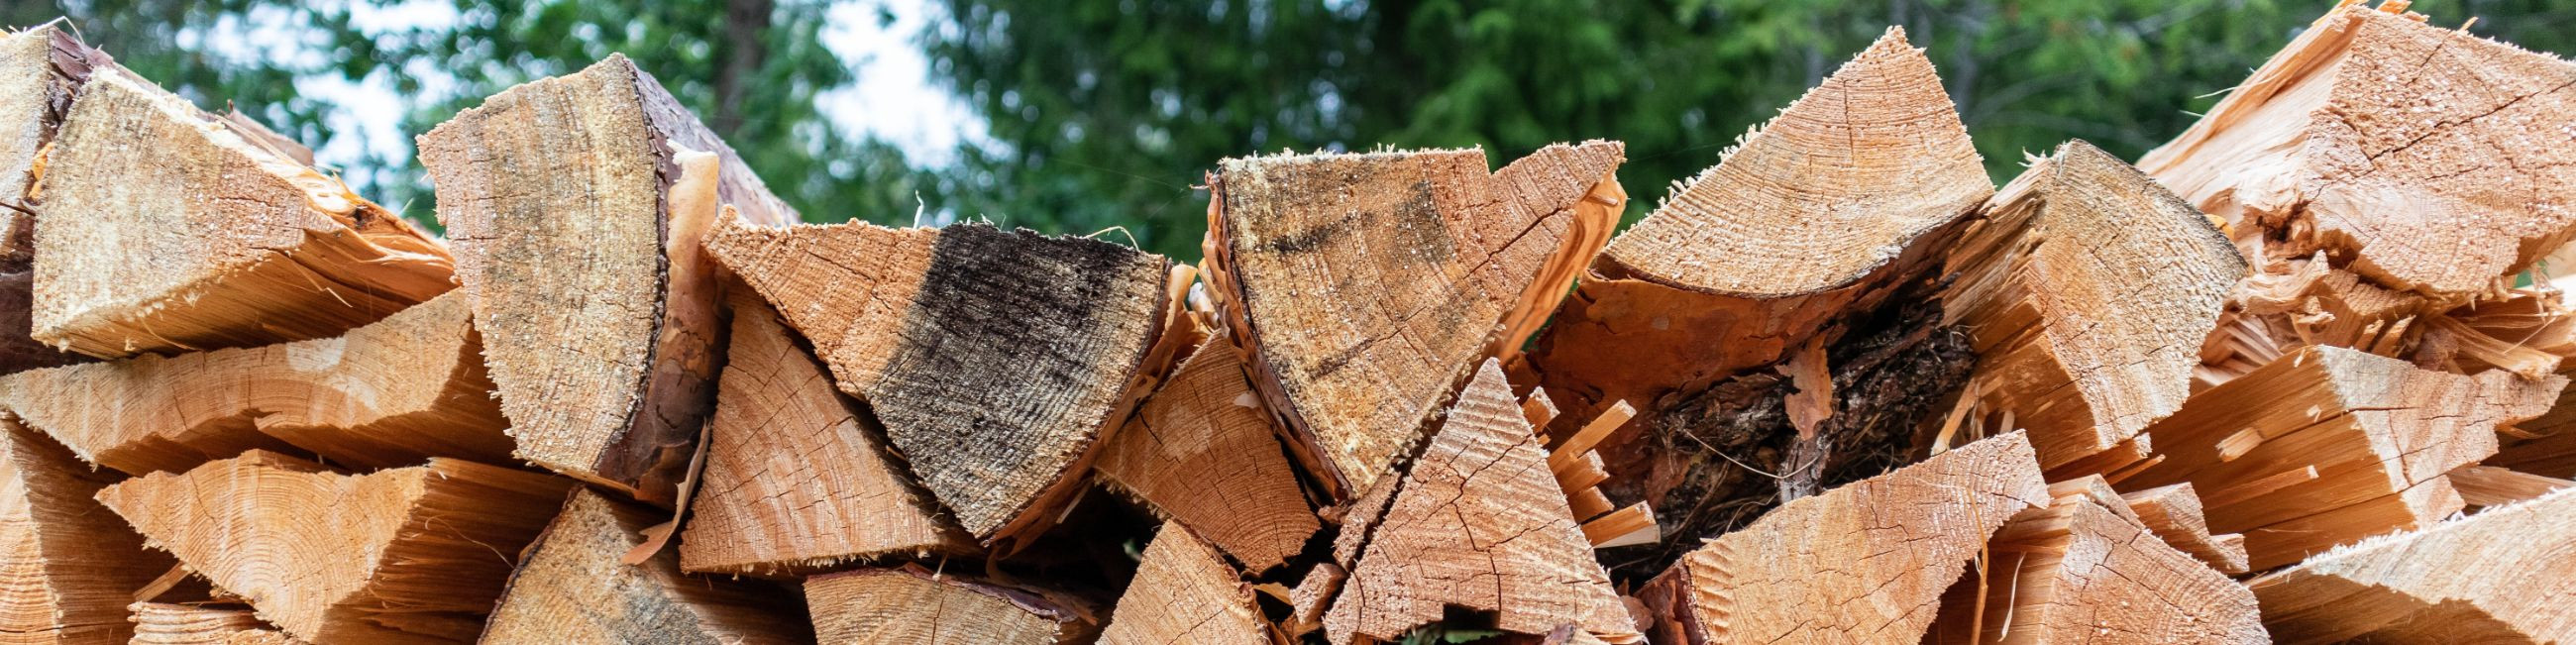 küttepuud, küttepuude müük, küttepuude tootmine, puuraie, ladustamine, transport, Lõhutud küttepuud, puude lõhkumine